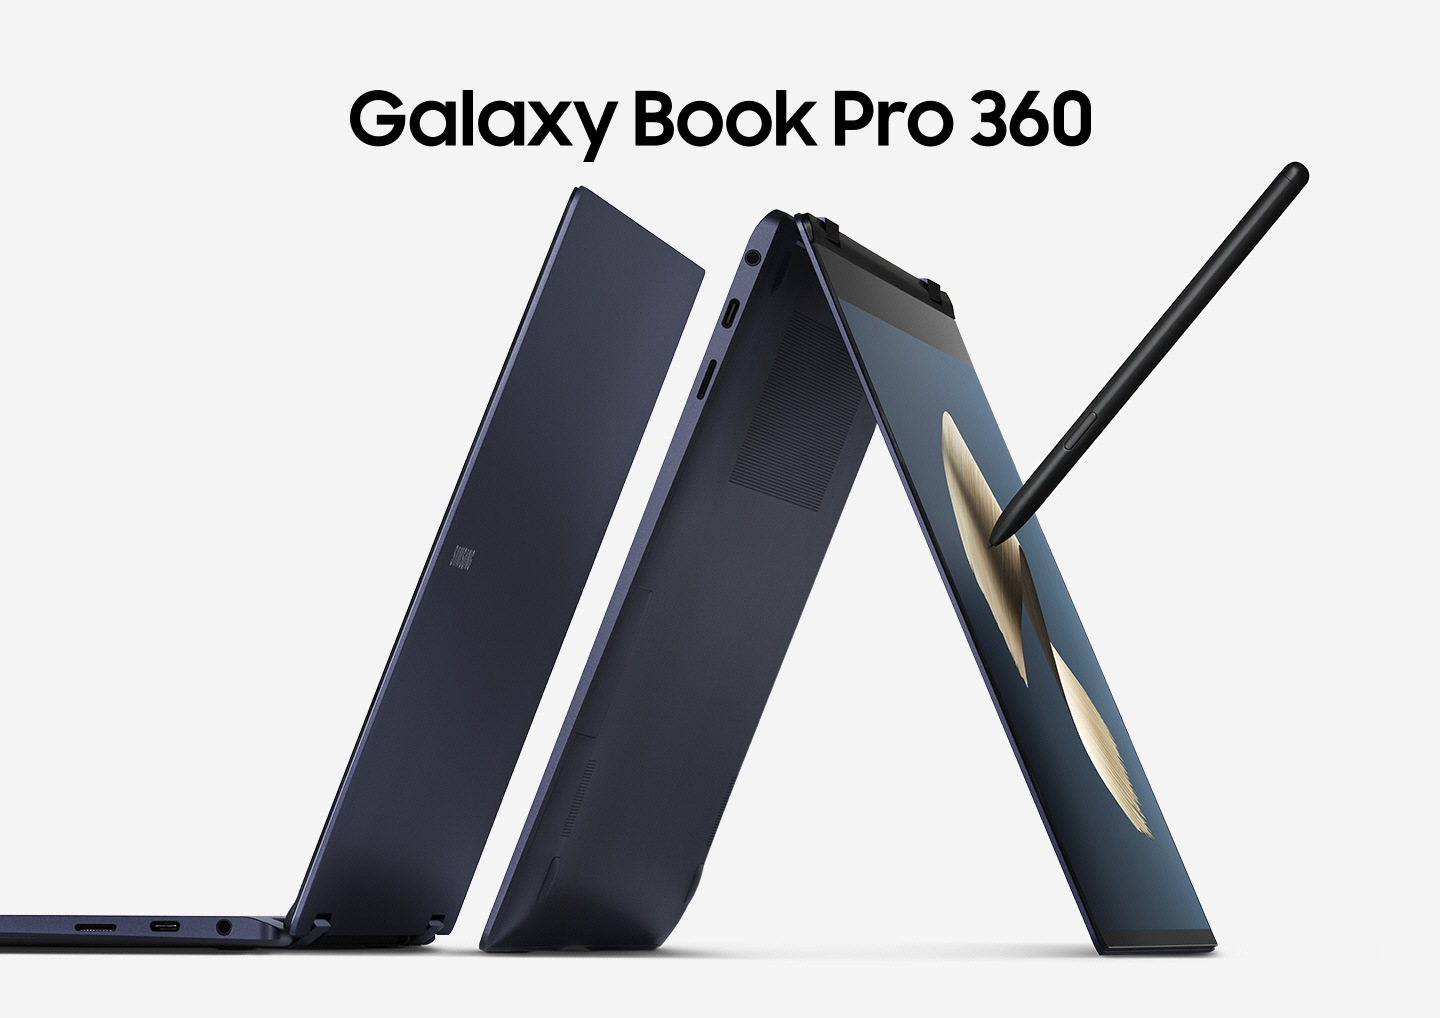 שני זהים 360 גלקסי ספר Pro 360 בכחול מיסטי ממוקמים זה לצד זה. אחד מהם מצויד בסגנון S, במצב אוהל, מונח על קצה המסך והמקלדת. Galaxy Book Pro 360 'כתוב